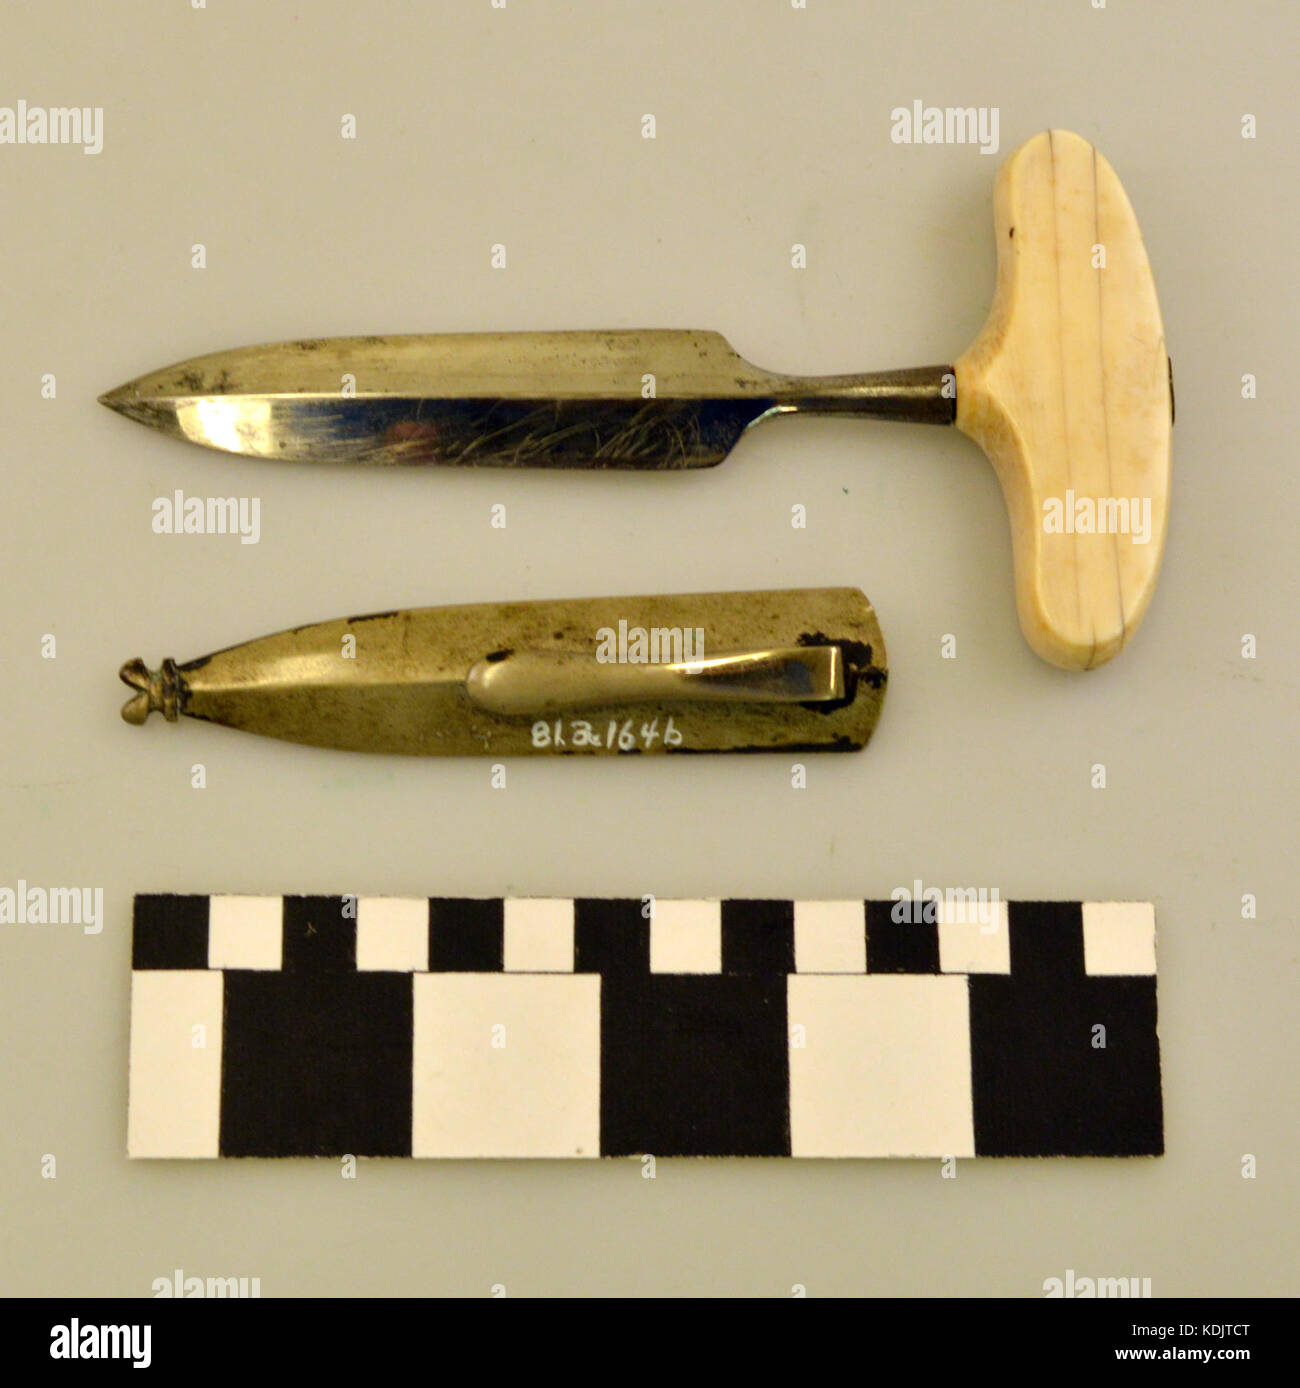 Ivory Handled Push Dagger and Sheath Stock Photo